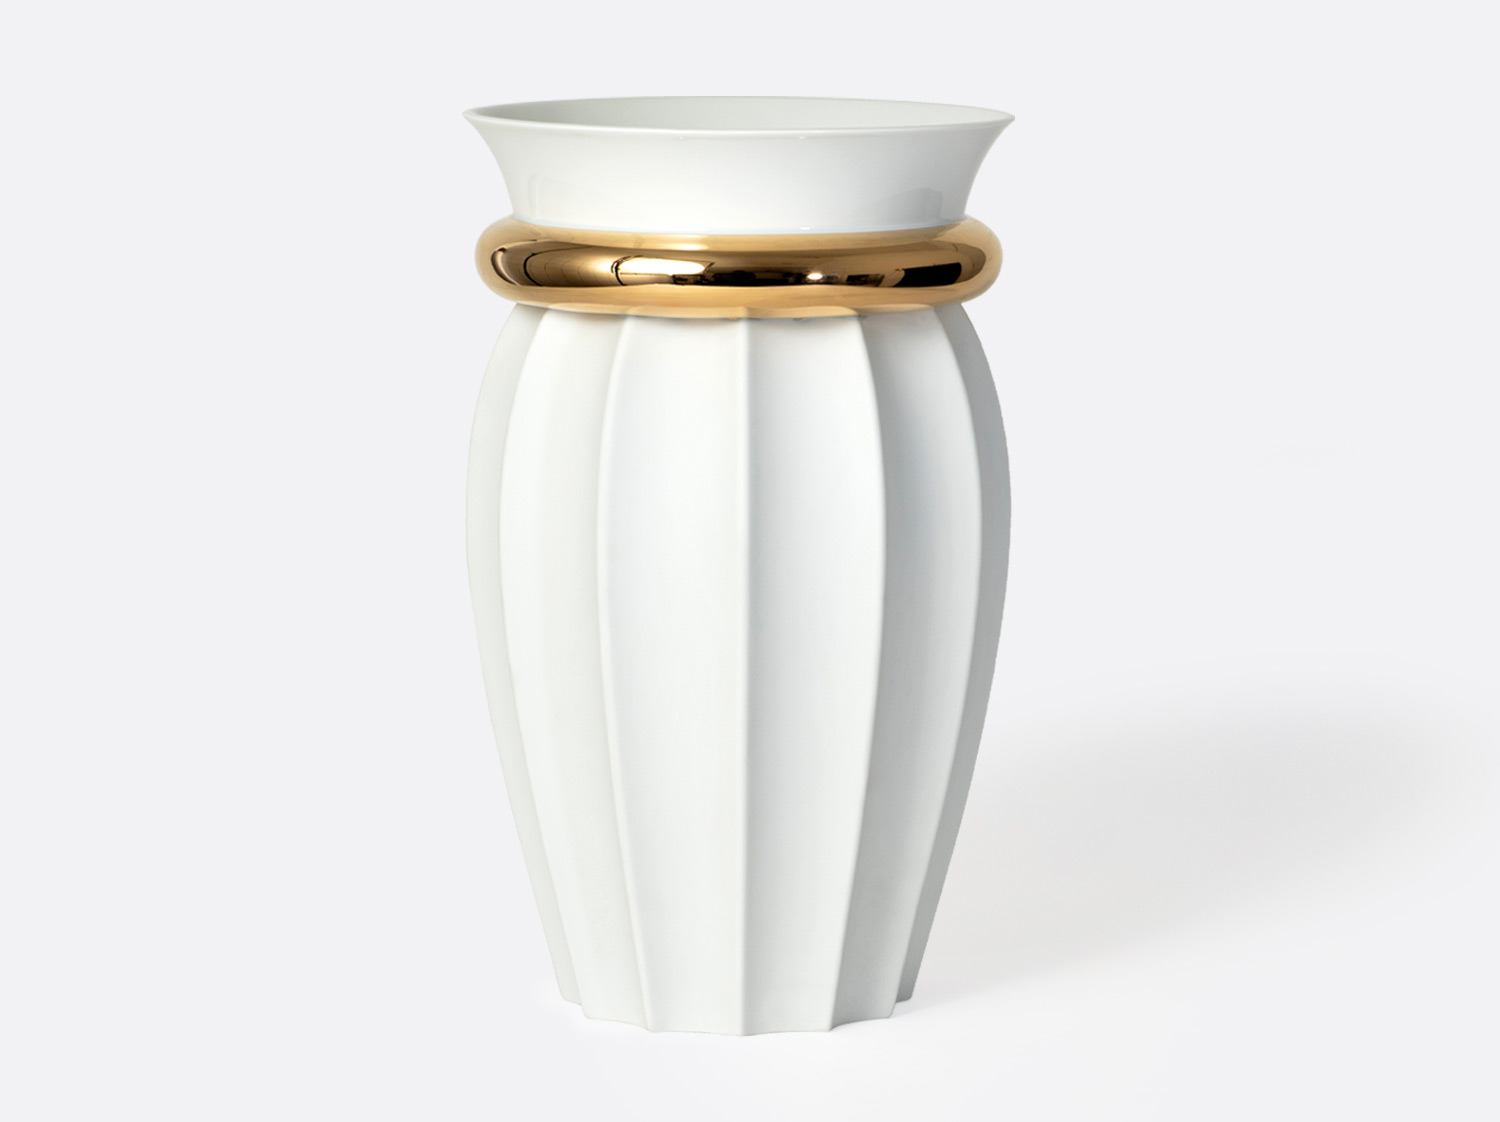 ベース H. 35 cm en porcelaine de la collection Ikaria Bernardaud